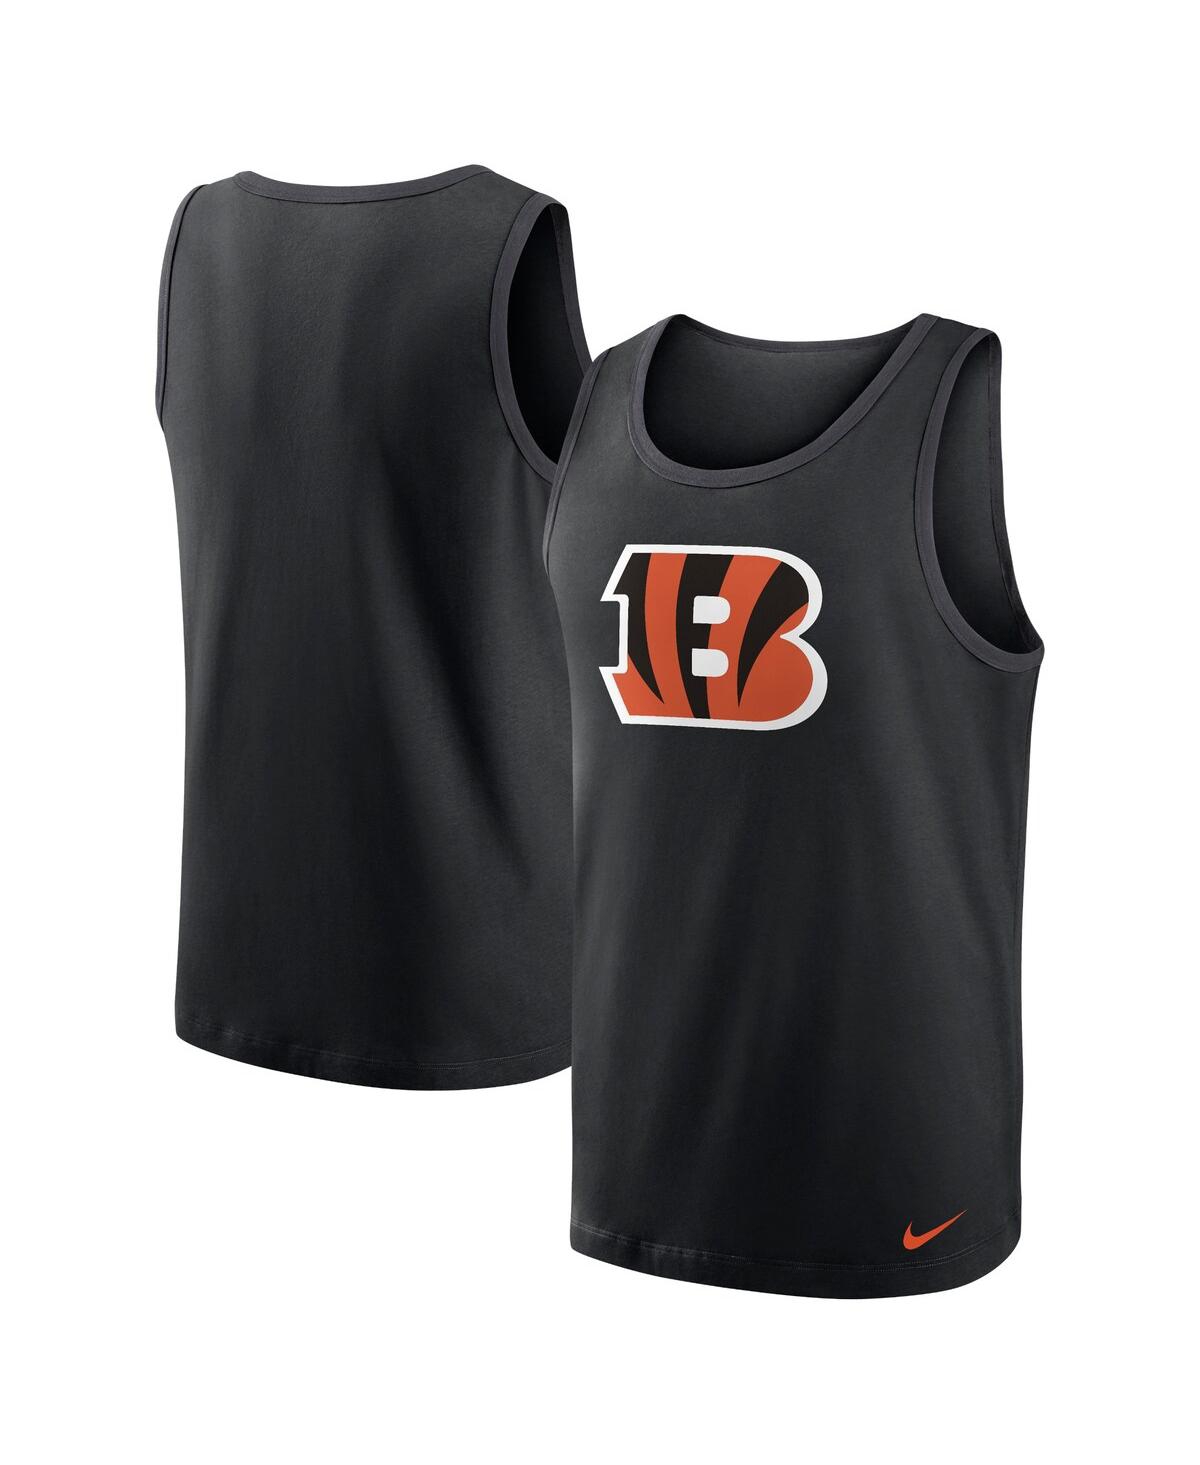 Nike Men's  Black Cincinnati Bengals Tri-blend Tank Top